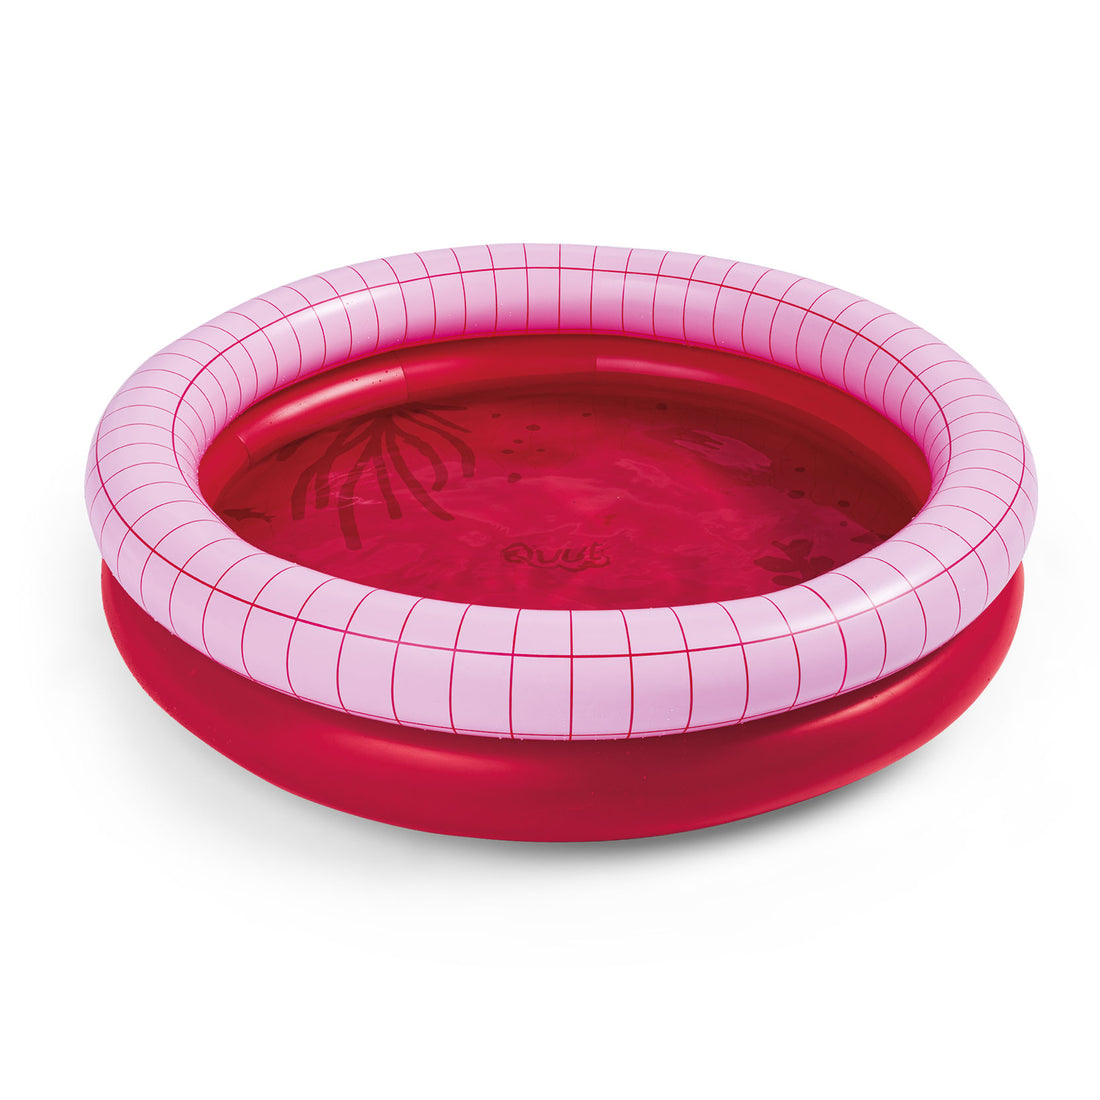 quut-dippy-inflatable-pool-dia-120cm-cherry-red-quut-172697- (1)